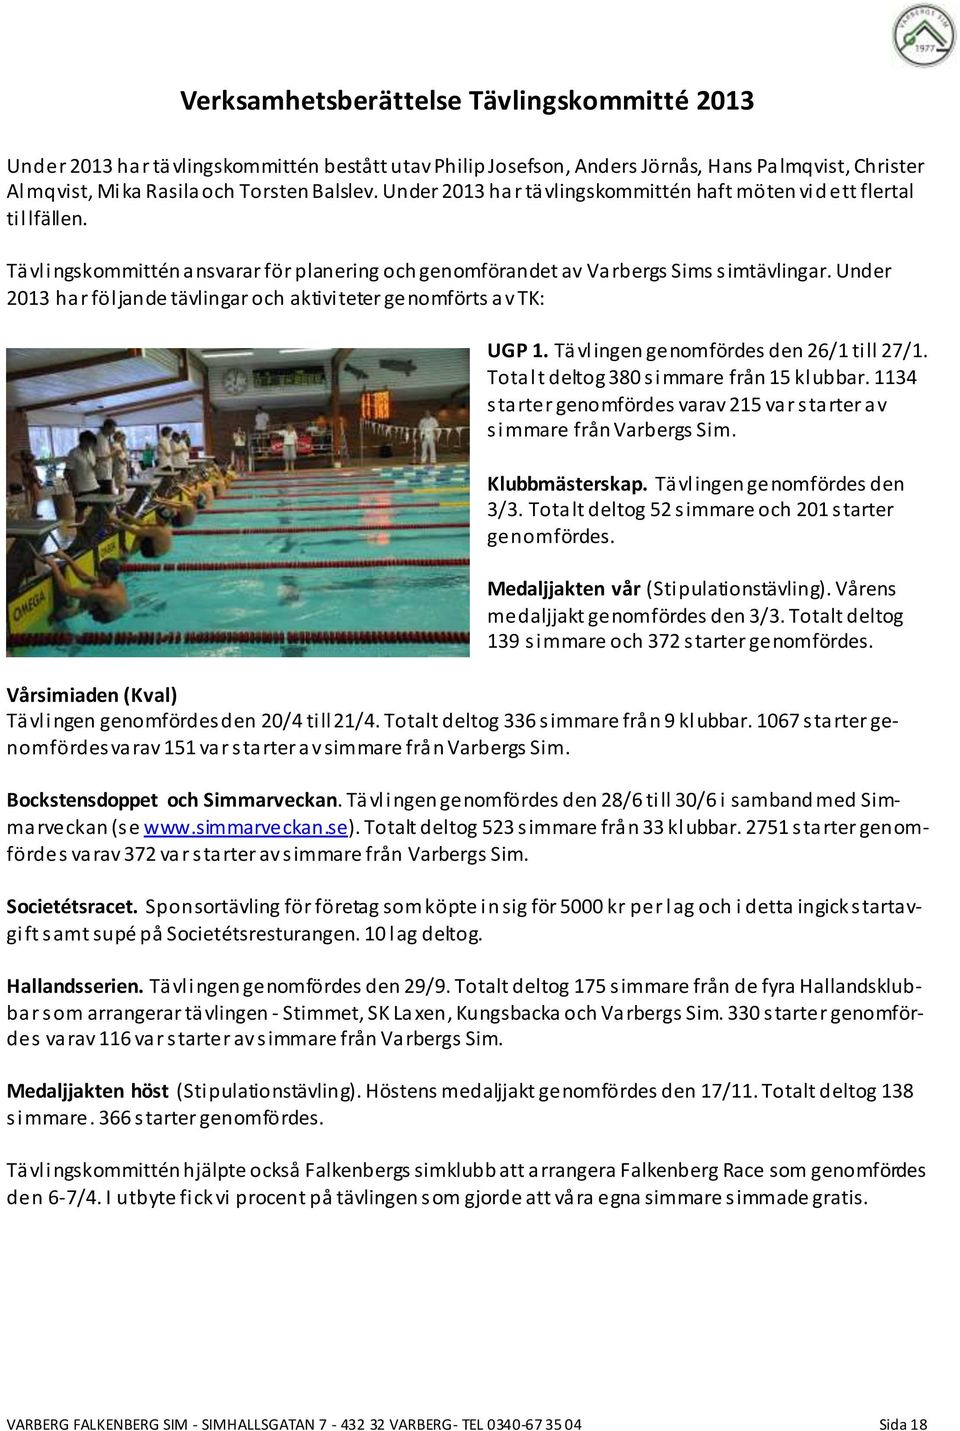 Under 2013 har följande tävlingar och aktiviteter genomförts av TK: UGP 1. Tävlingen genomfördes den 26/1 till 27/1. Totalt deltog 380 simmare från 15 klubbar.